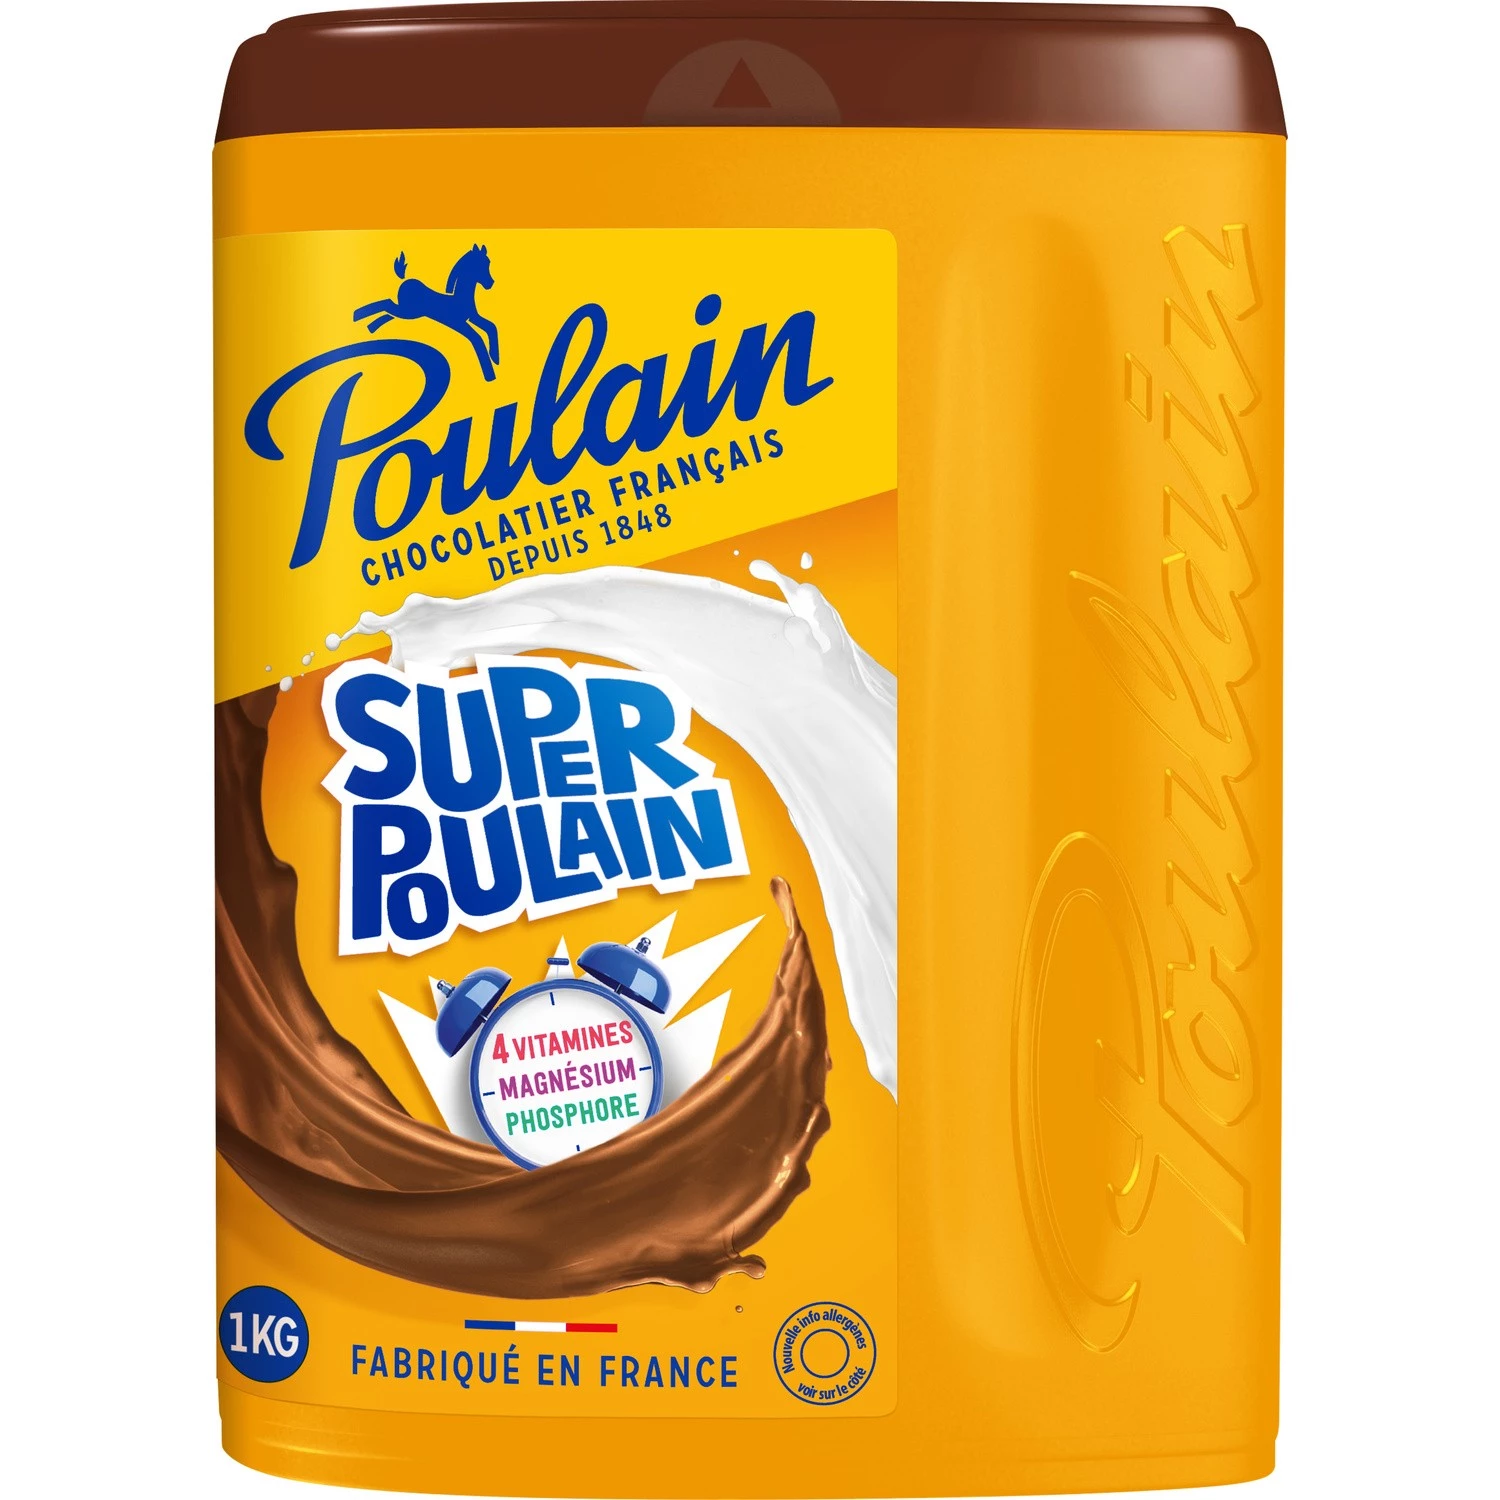 超级普兰巧克力粉 1kg - POULAIN